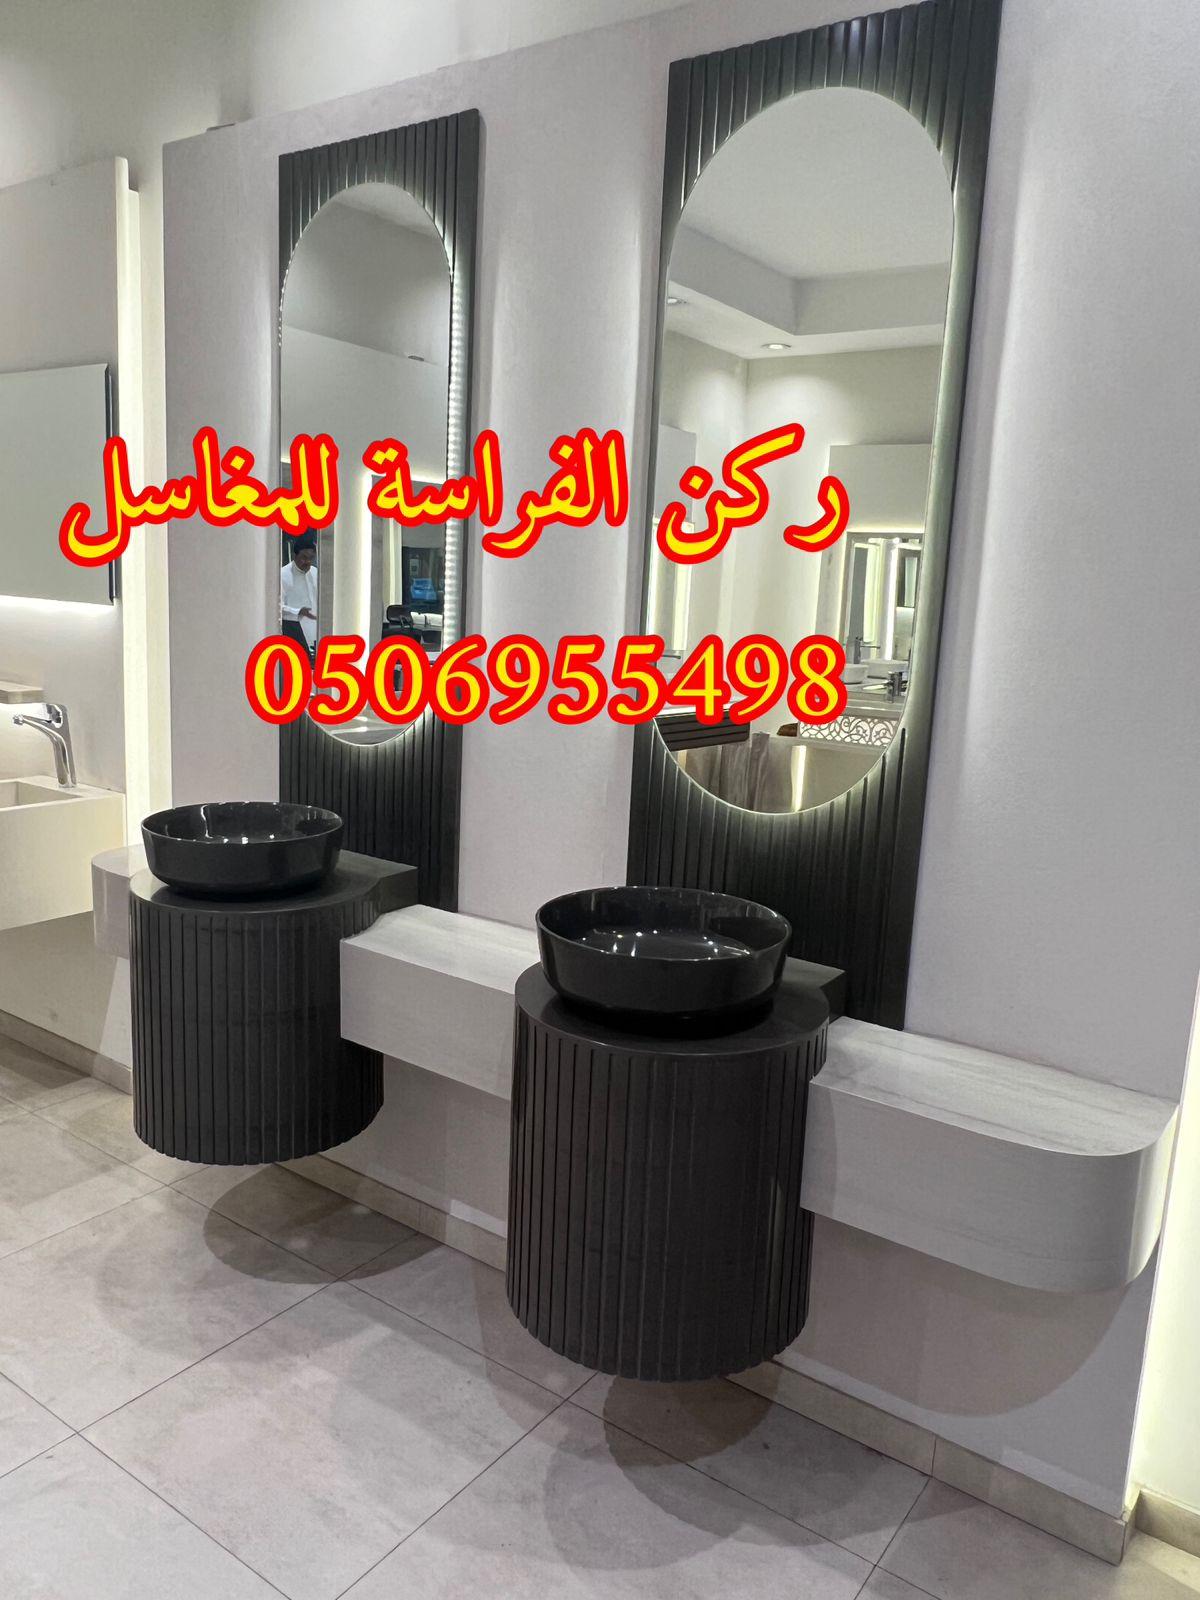 الرياض - احواض مغاسل رخام في الرياض,0506955498 939389192